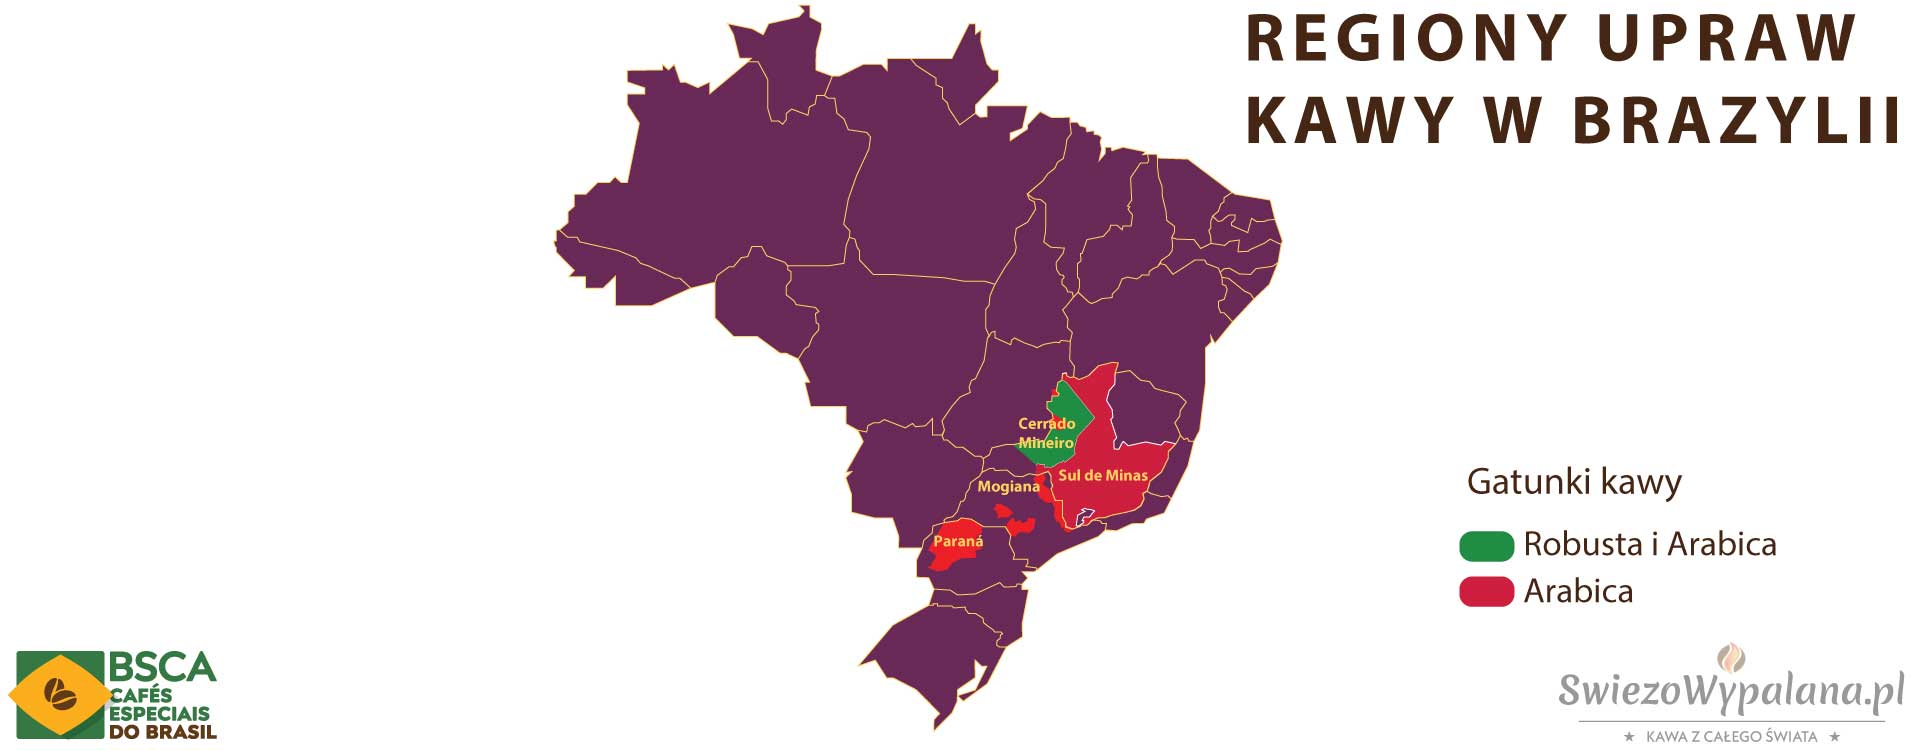 Kawa z Brazylii: Od Historii po Tajemnice Regionów Upraw II